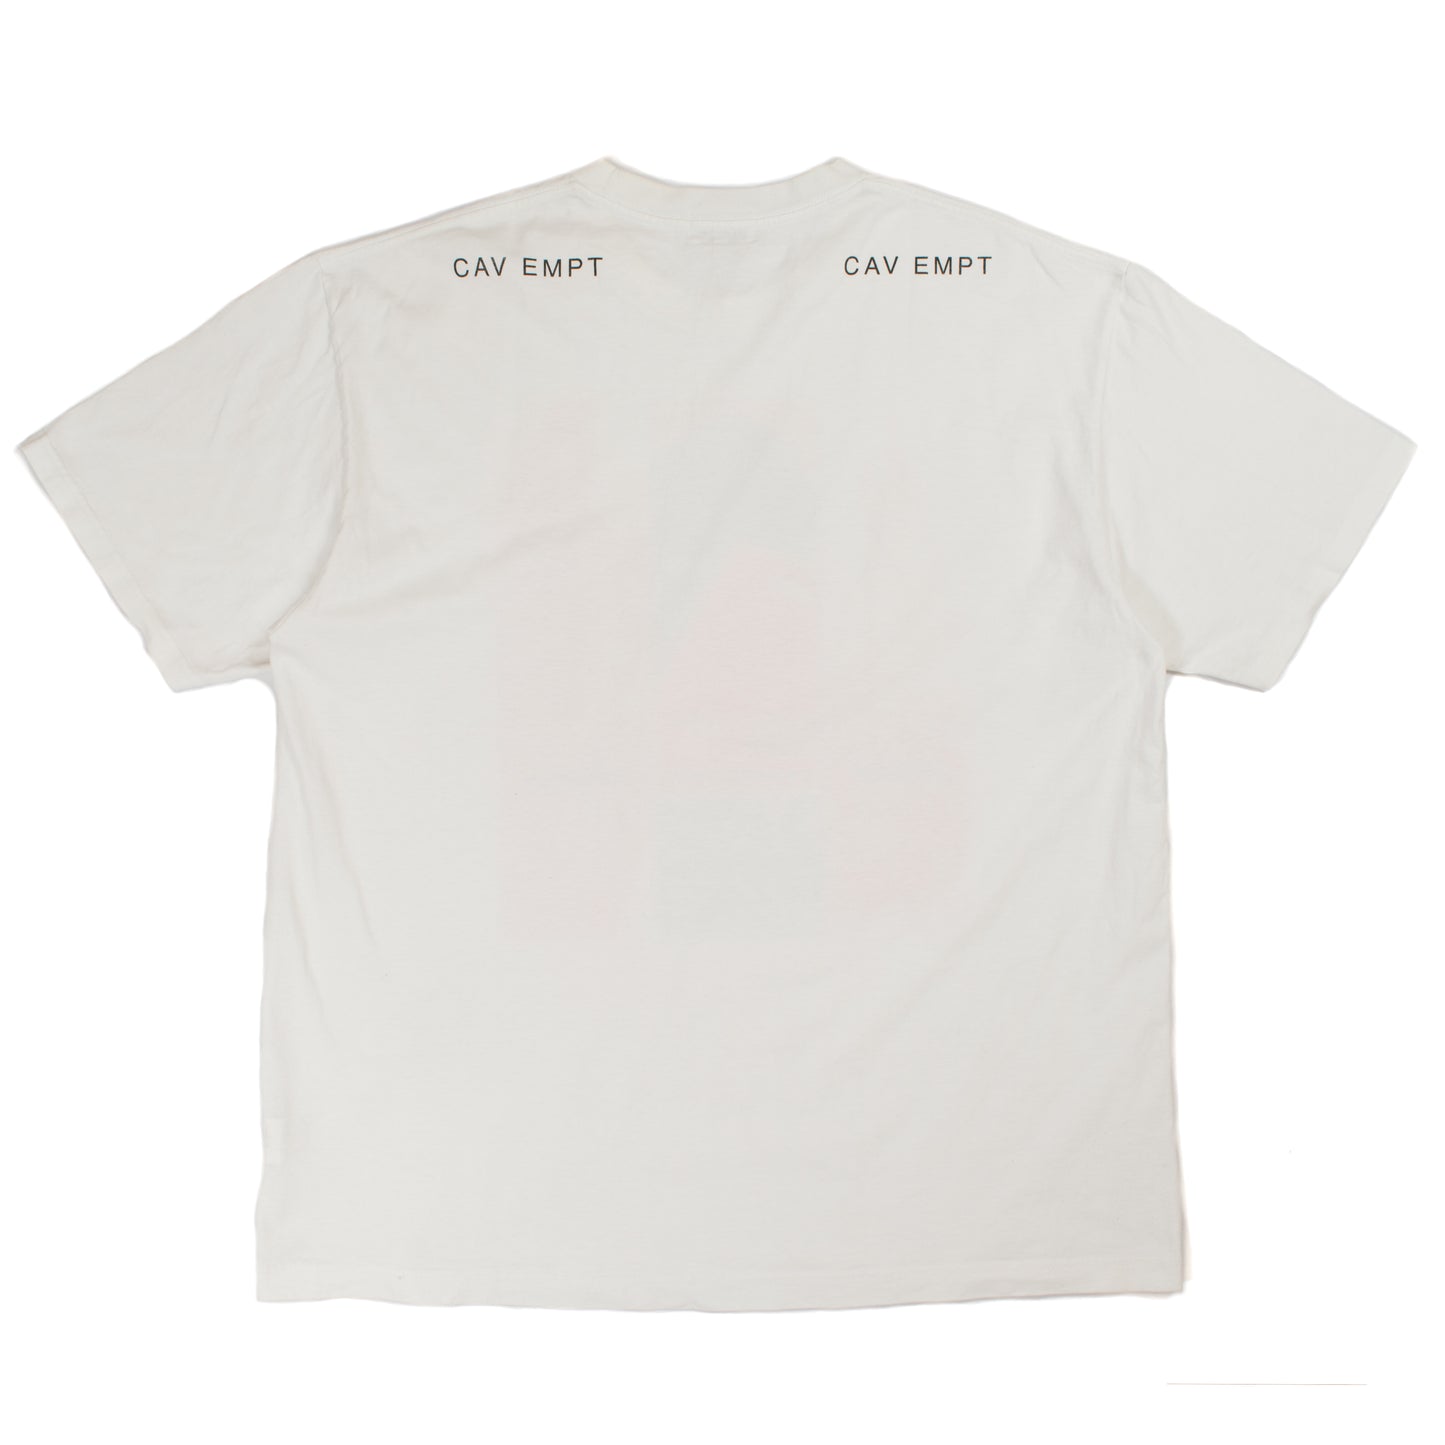 Cav Empt cavempt.com Design T-Shirt (2018AW)